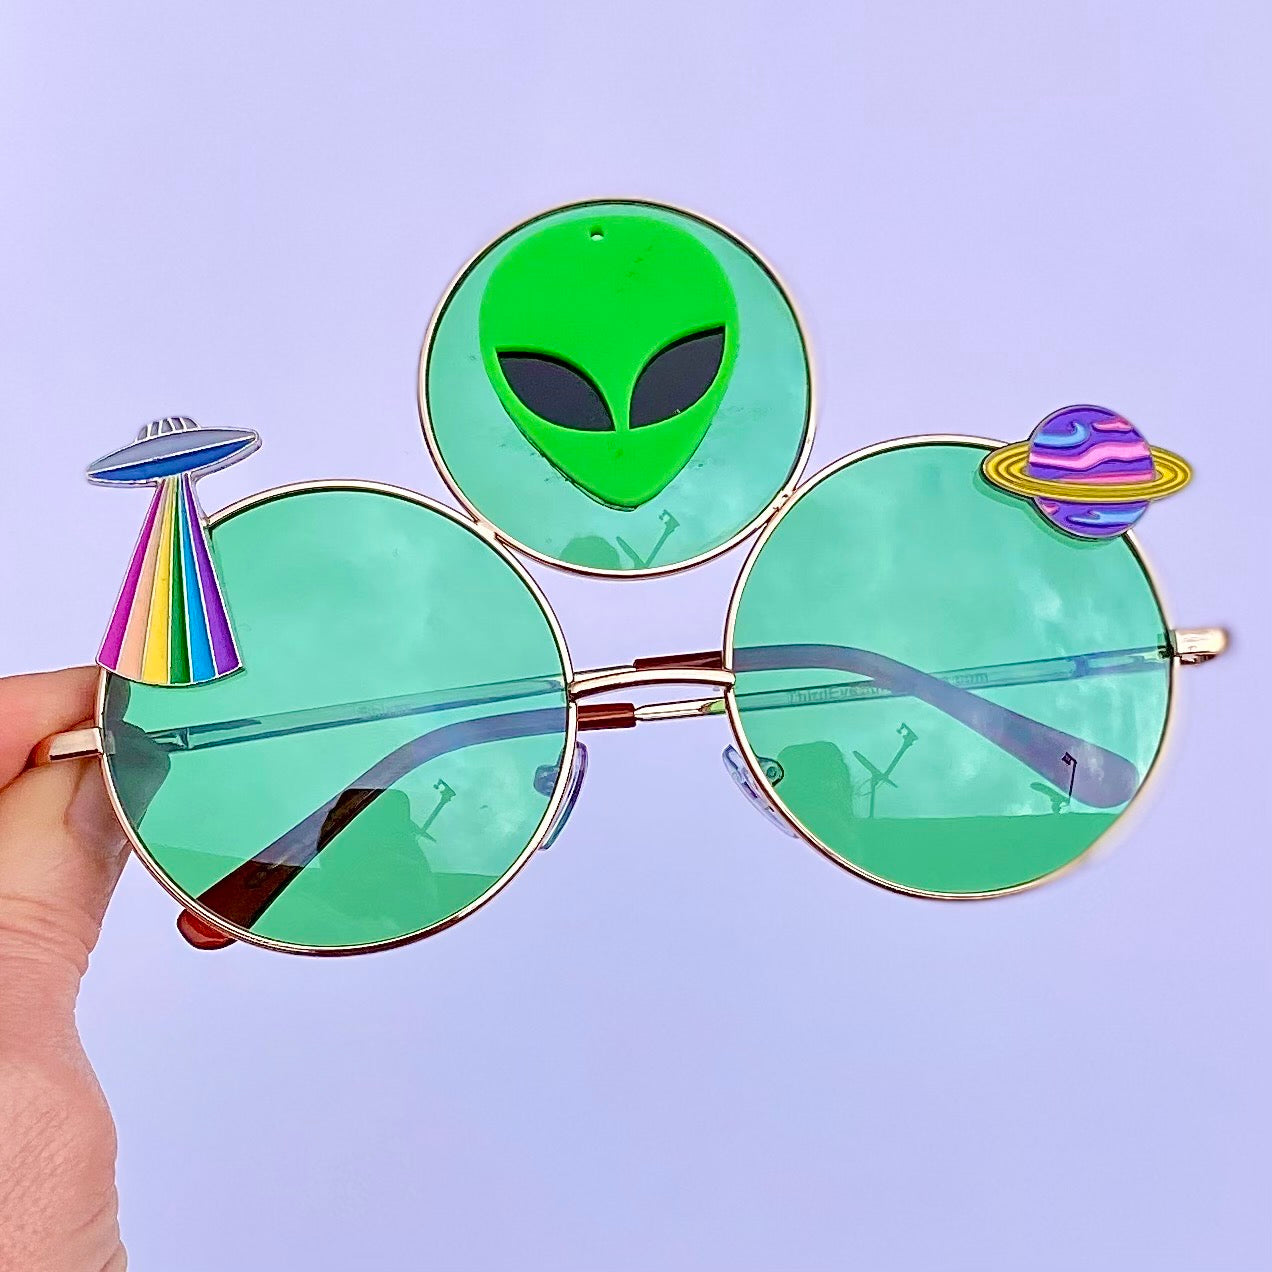 Las gafas que necesitas para la joda 👽🔥 ig alien.eyewear #techno #r